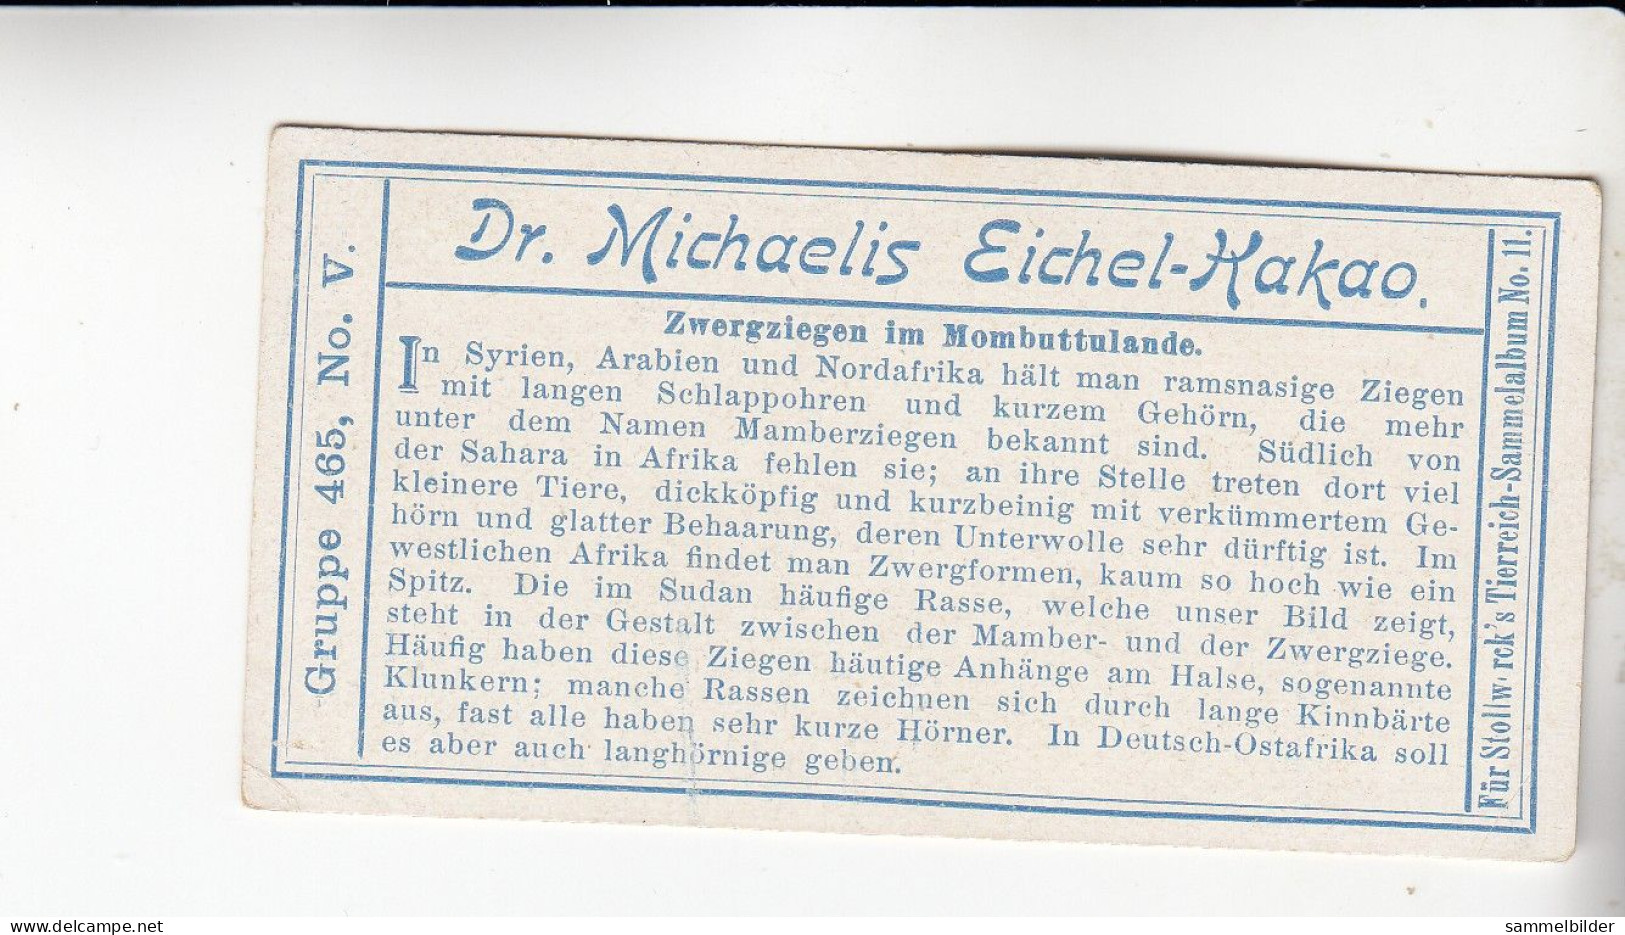 Stollwerck Album No 11 Ziegen Zwergziegen Im Mombuttulande    Grp 465 #5 Von 1910 - Stollwerck